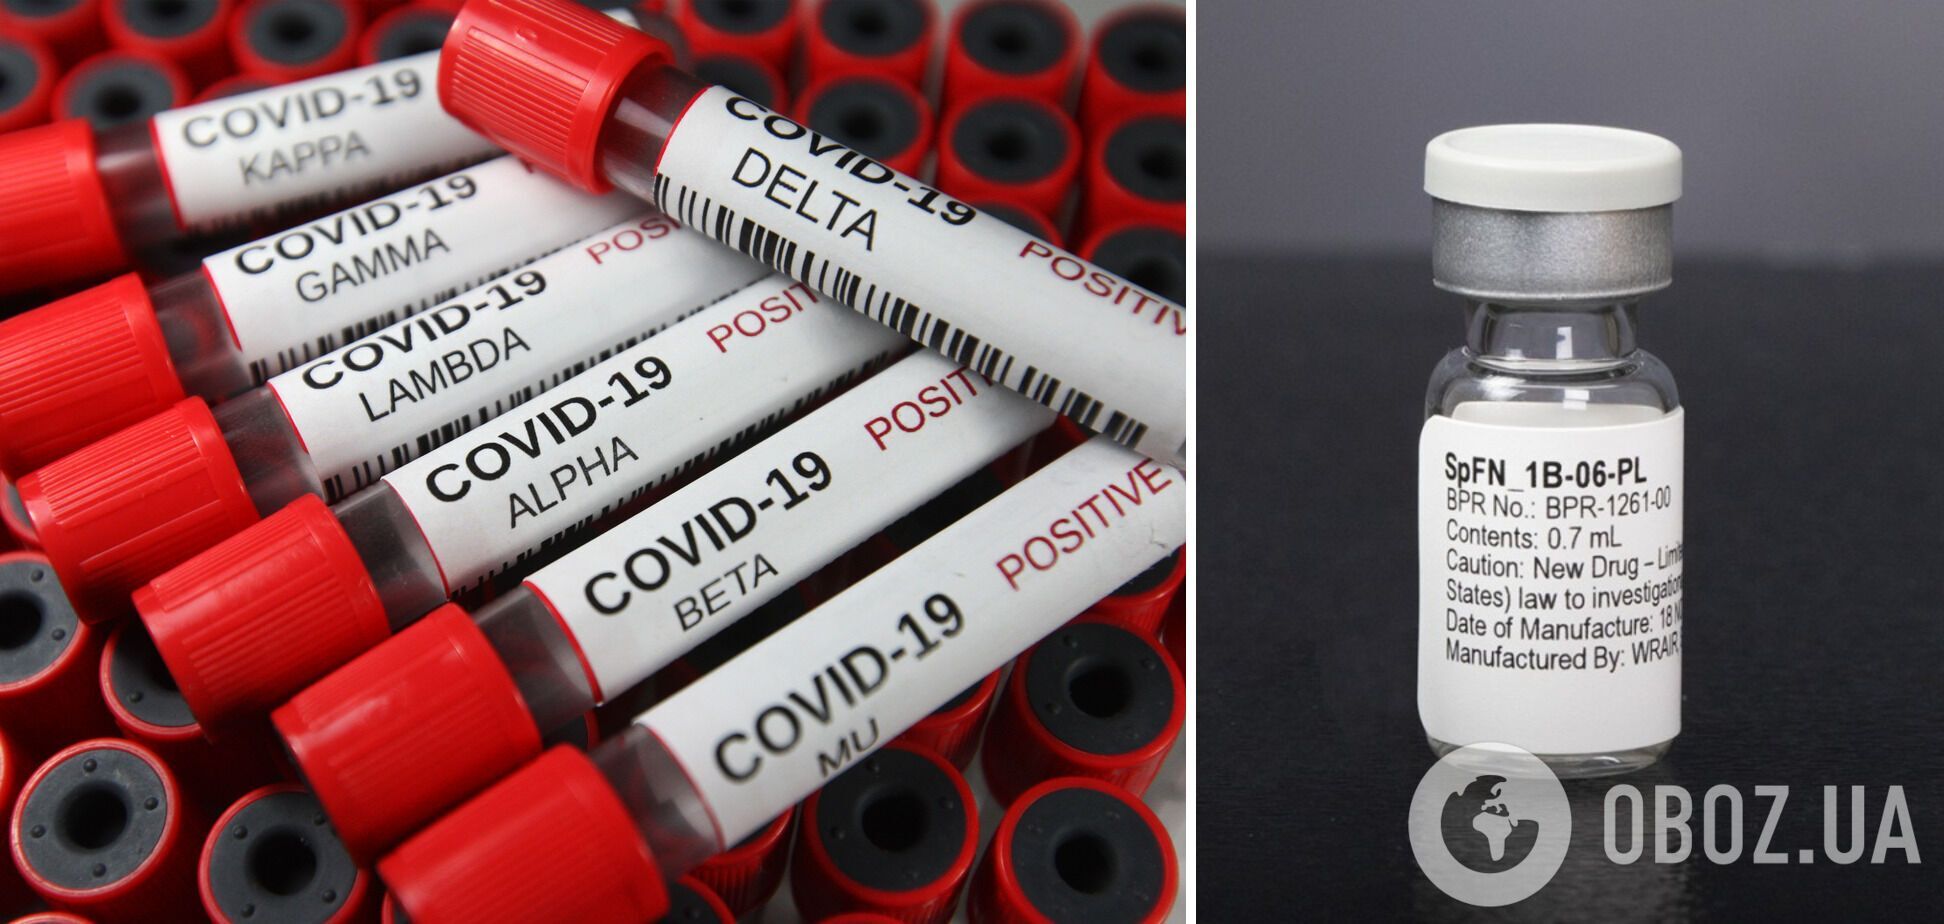 Фахівці кажуть, що вакцина SpFN зможе захистити від будь-якого штаму COVID-19